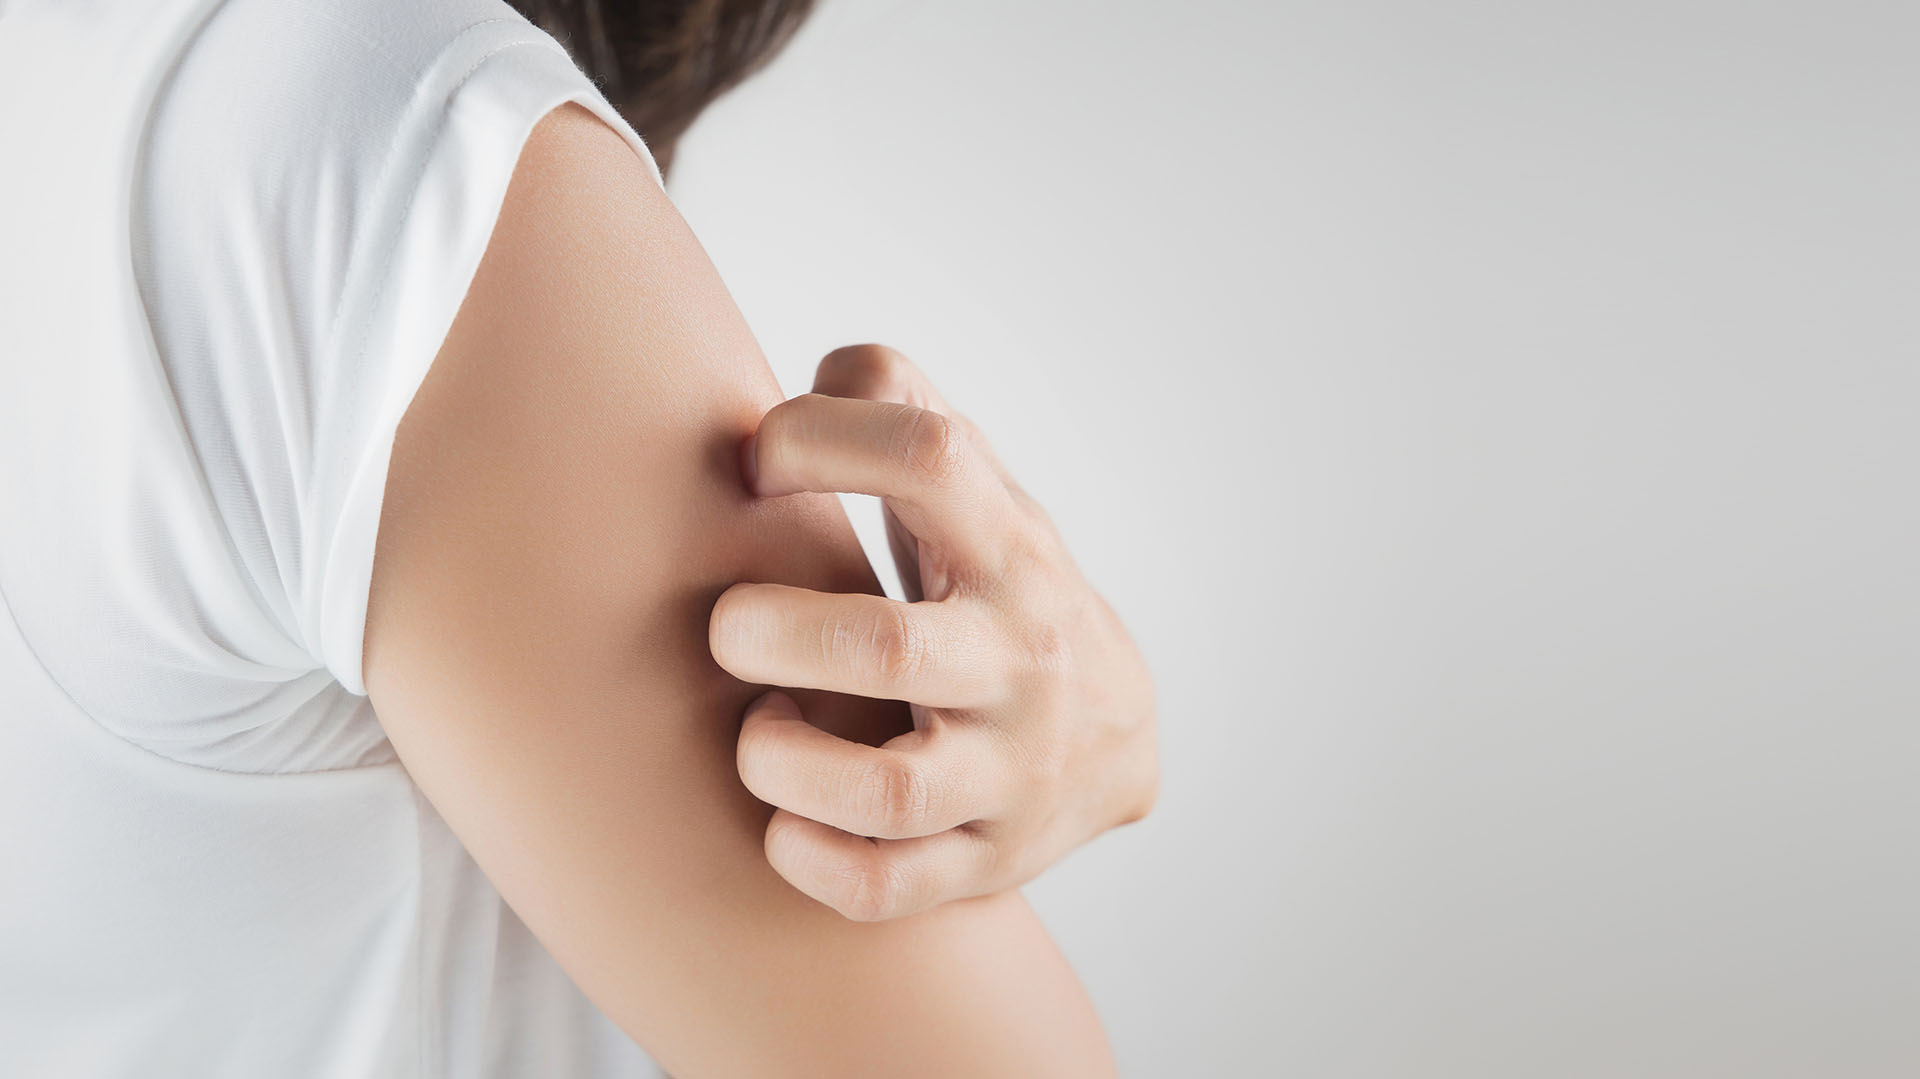 Determinados alimentos, el clima y hasta el estrés pueden incrementar la dermatitis atópica (Getty Images)